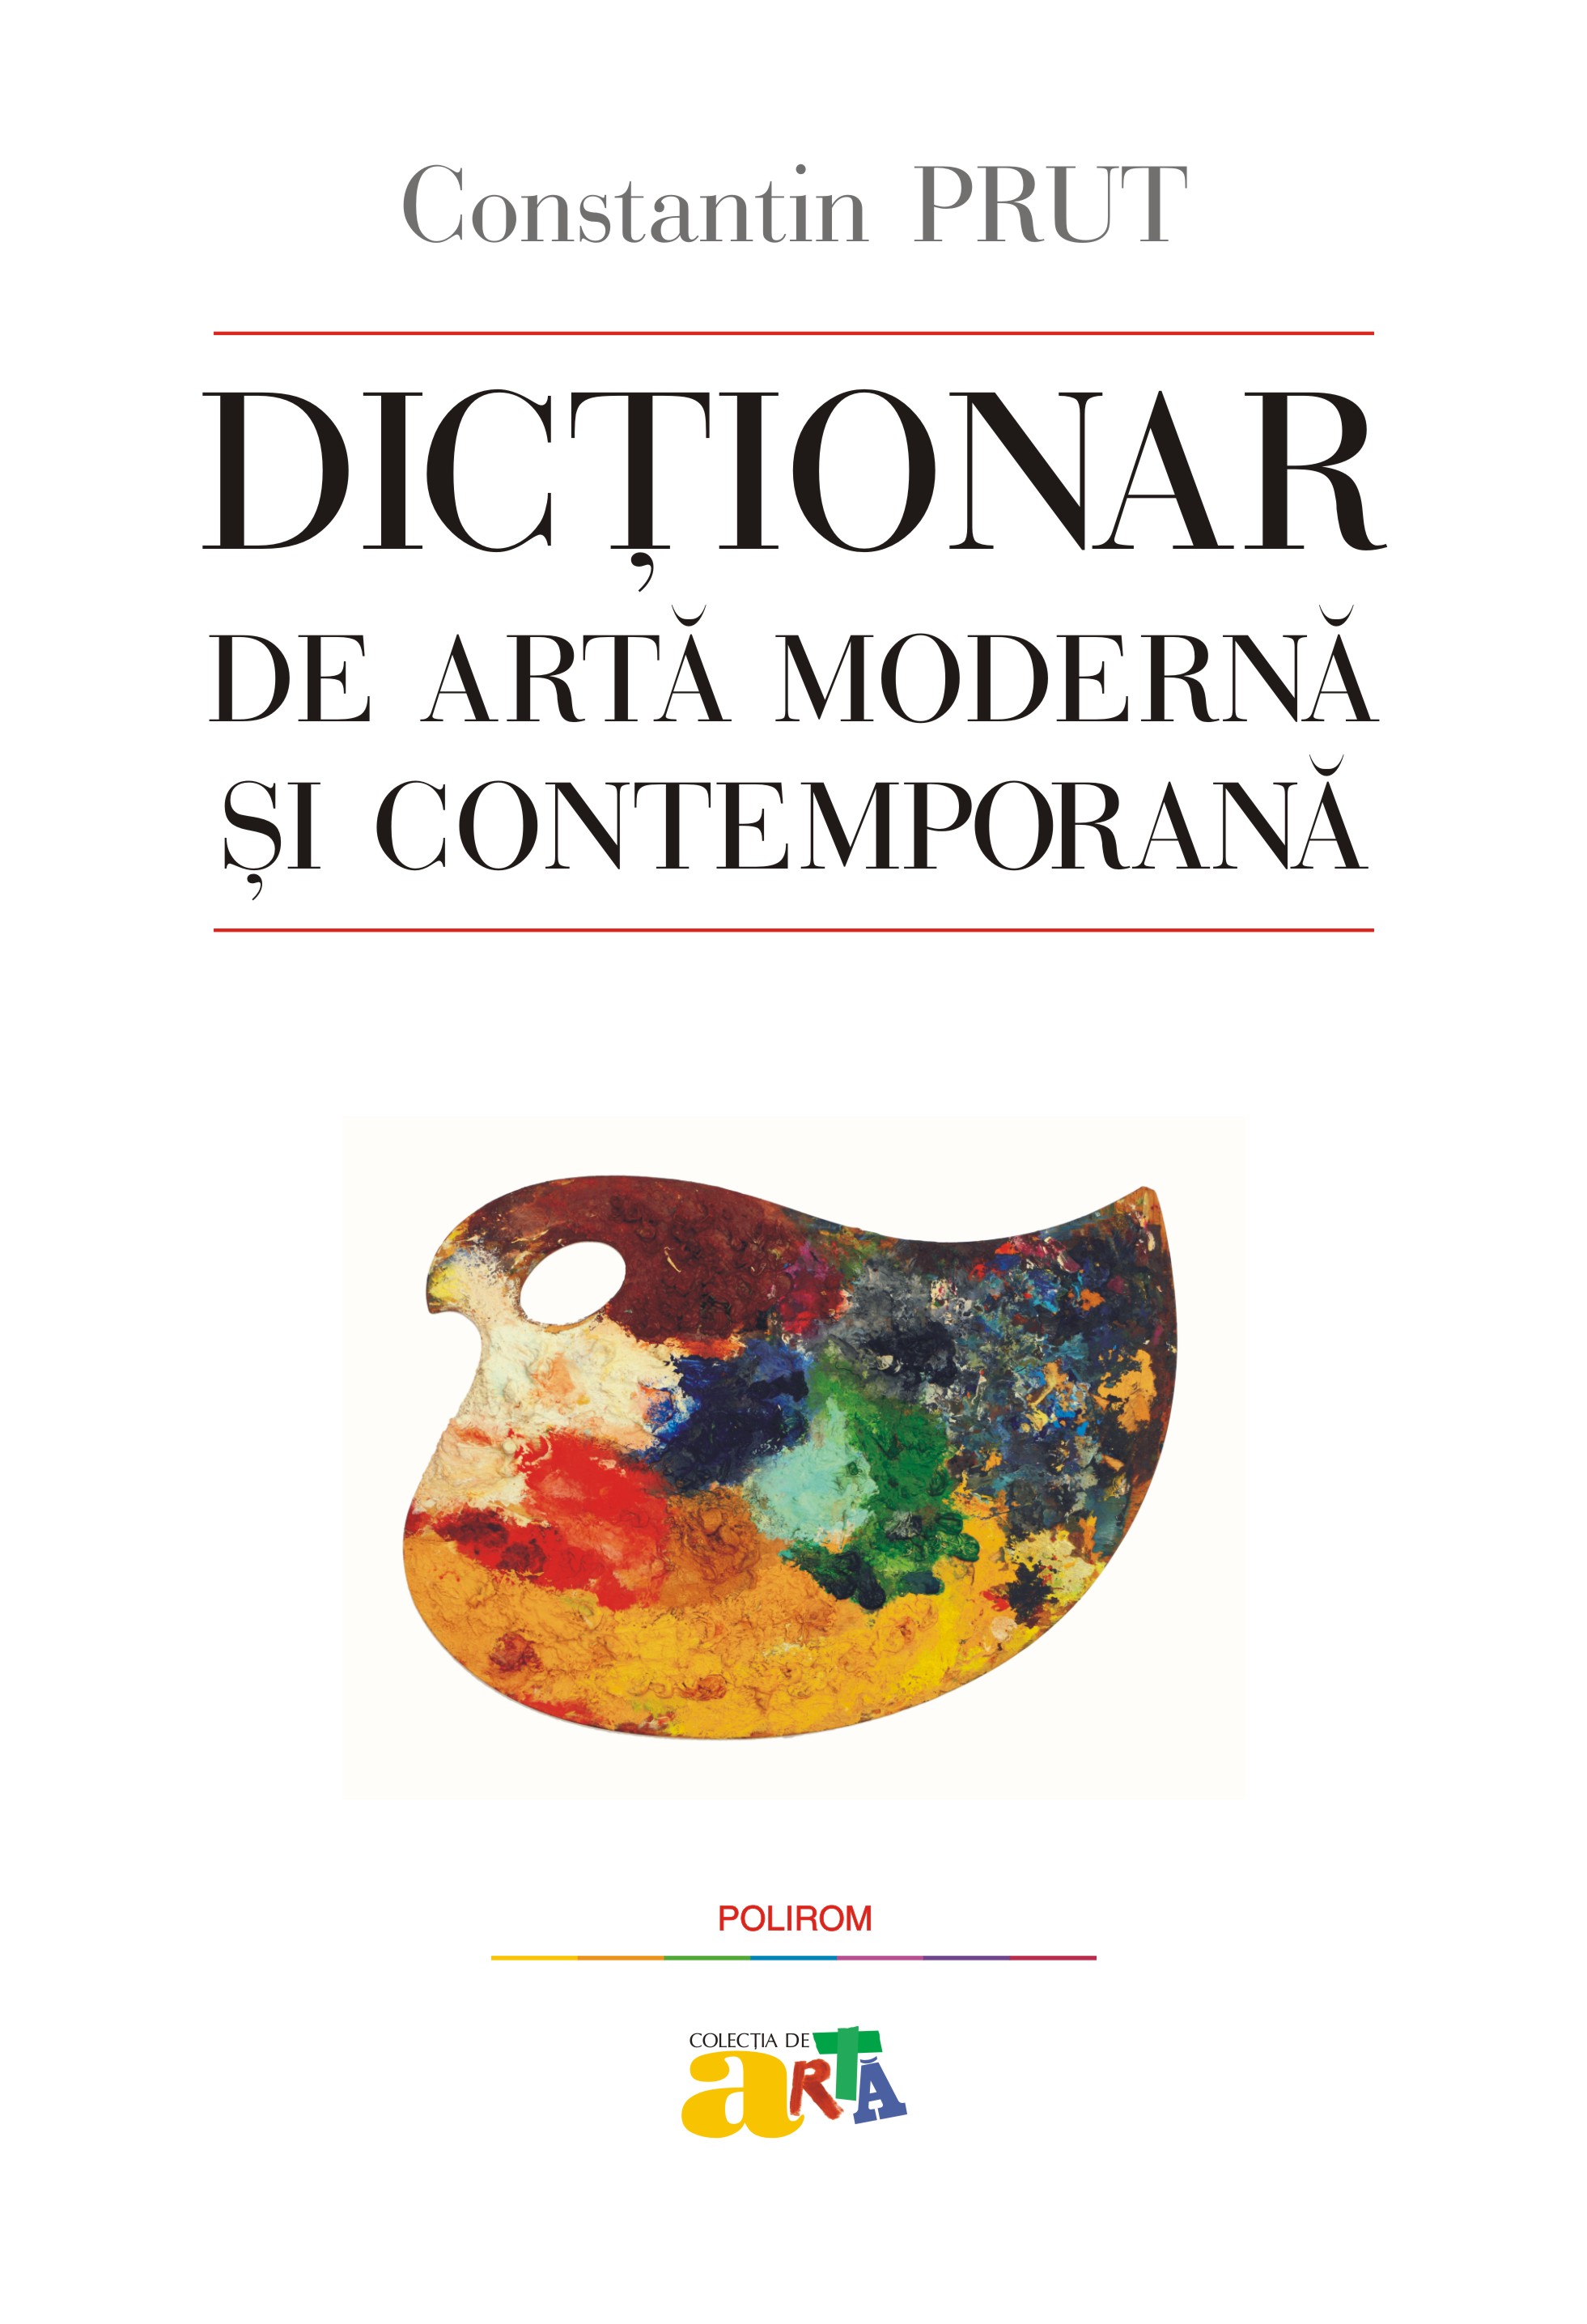 eBook Dictionar de arta moderna si contemporana - Constantin Prut